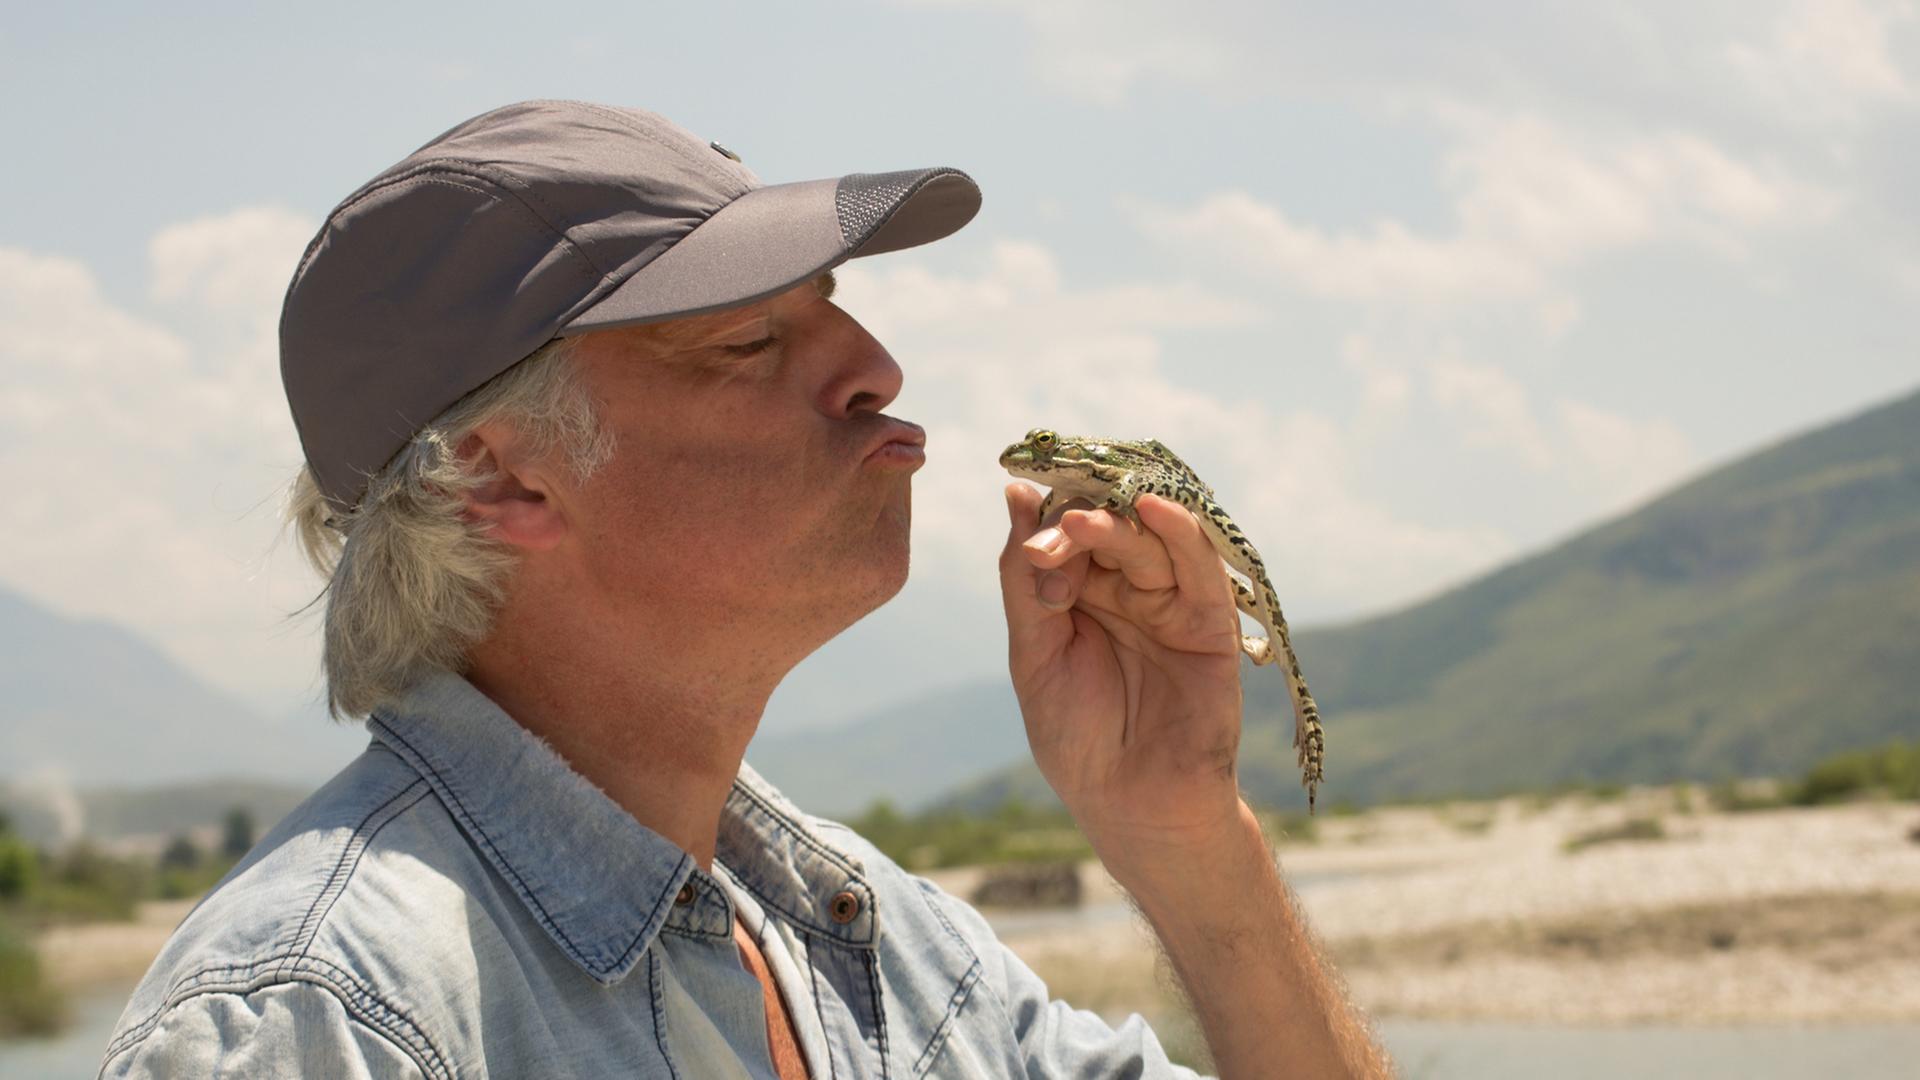 Artenschützer Ulrich Eichelmann küsst einen Frosch